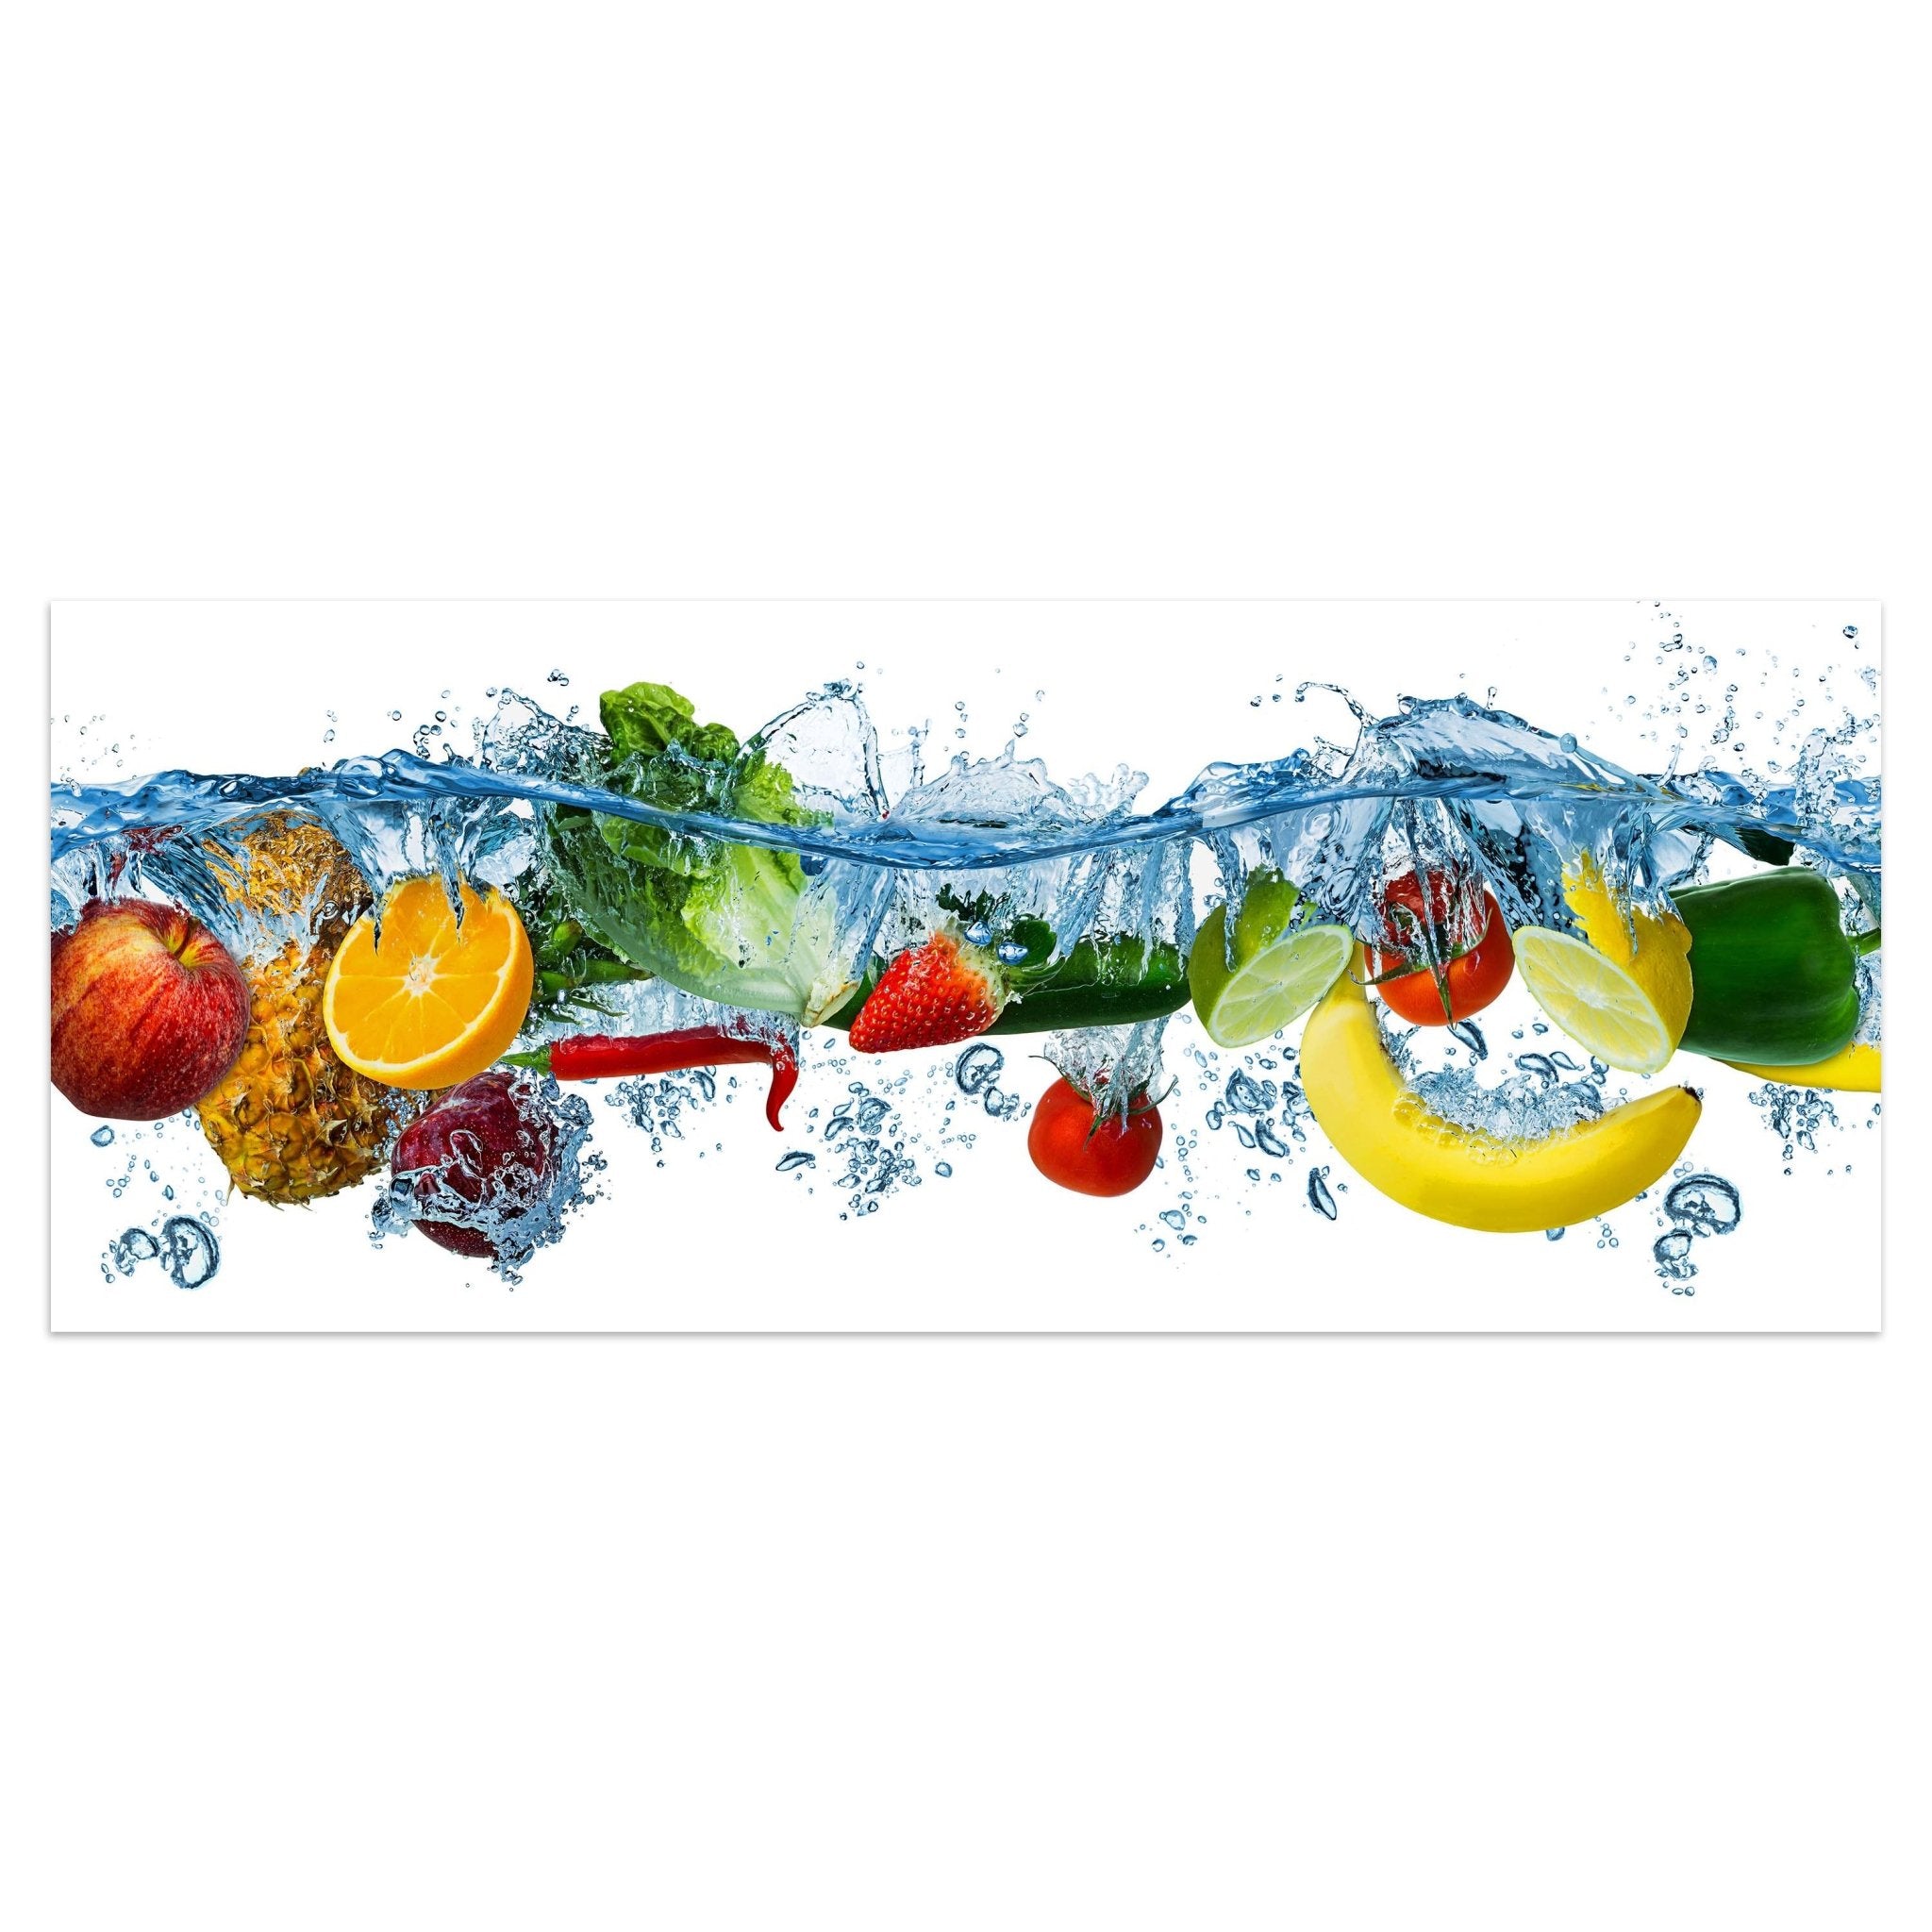 Leinwandbild Obst & Gemüse im Wasser, Früchte M1083 kaufen - Bild 1